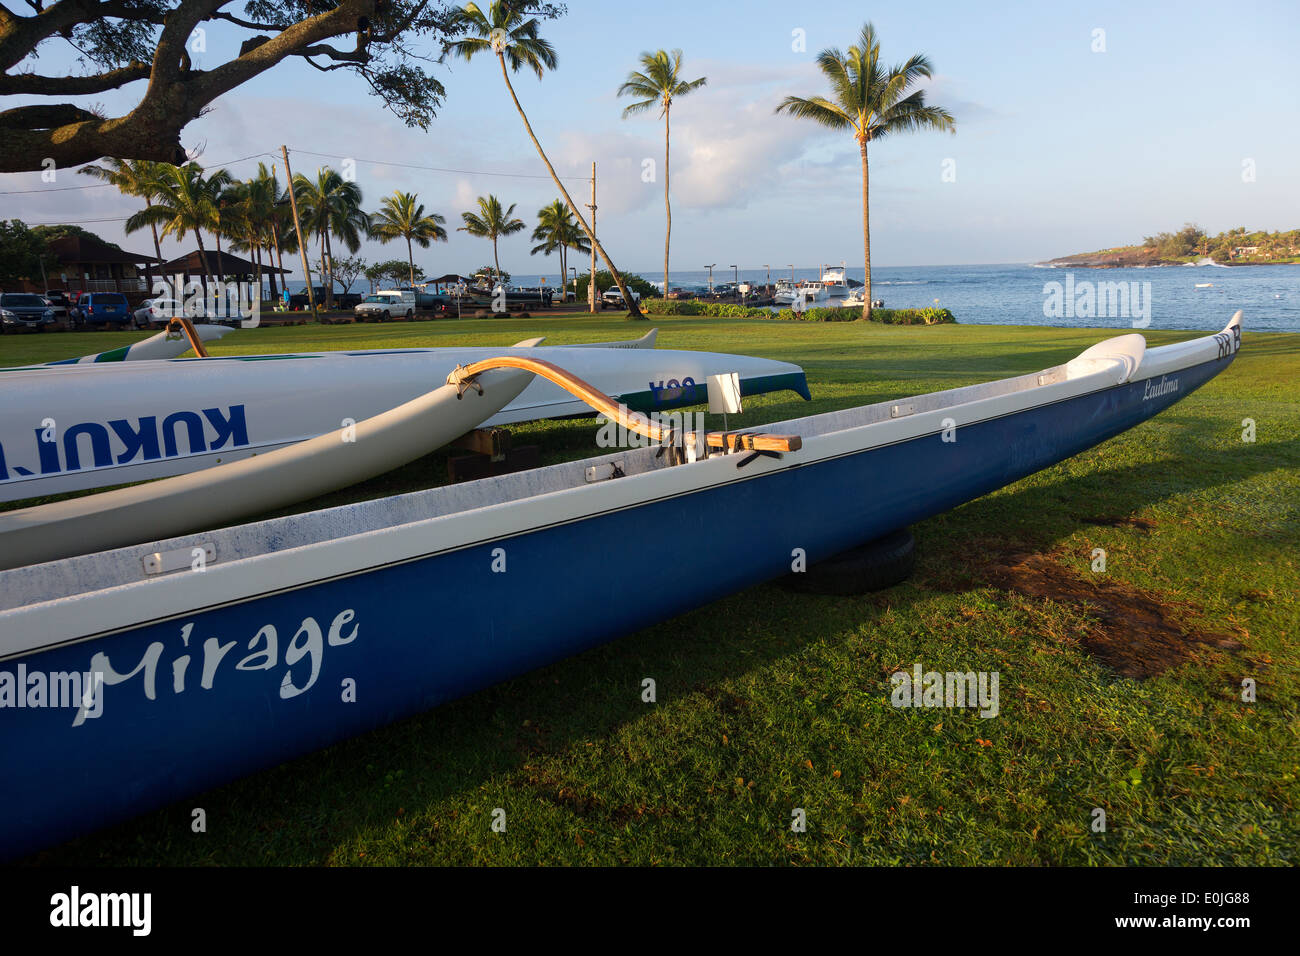 Outrigger boats at rest at Kukui'ula harbor Kauai, Hawaii Stock Photo